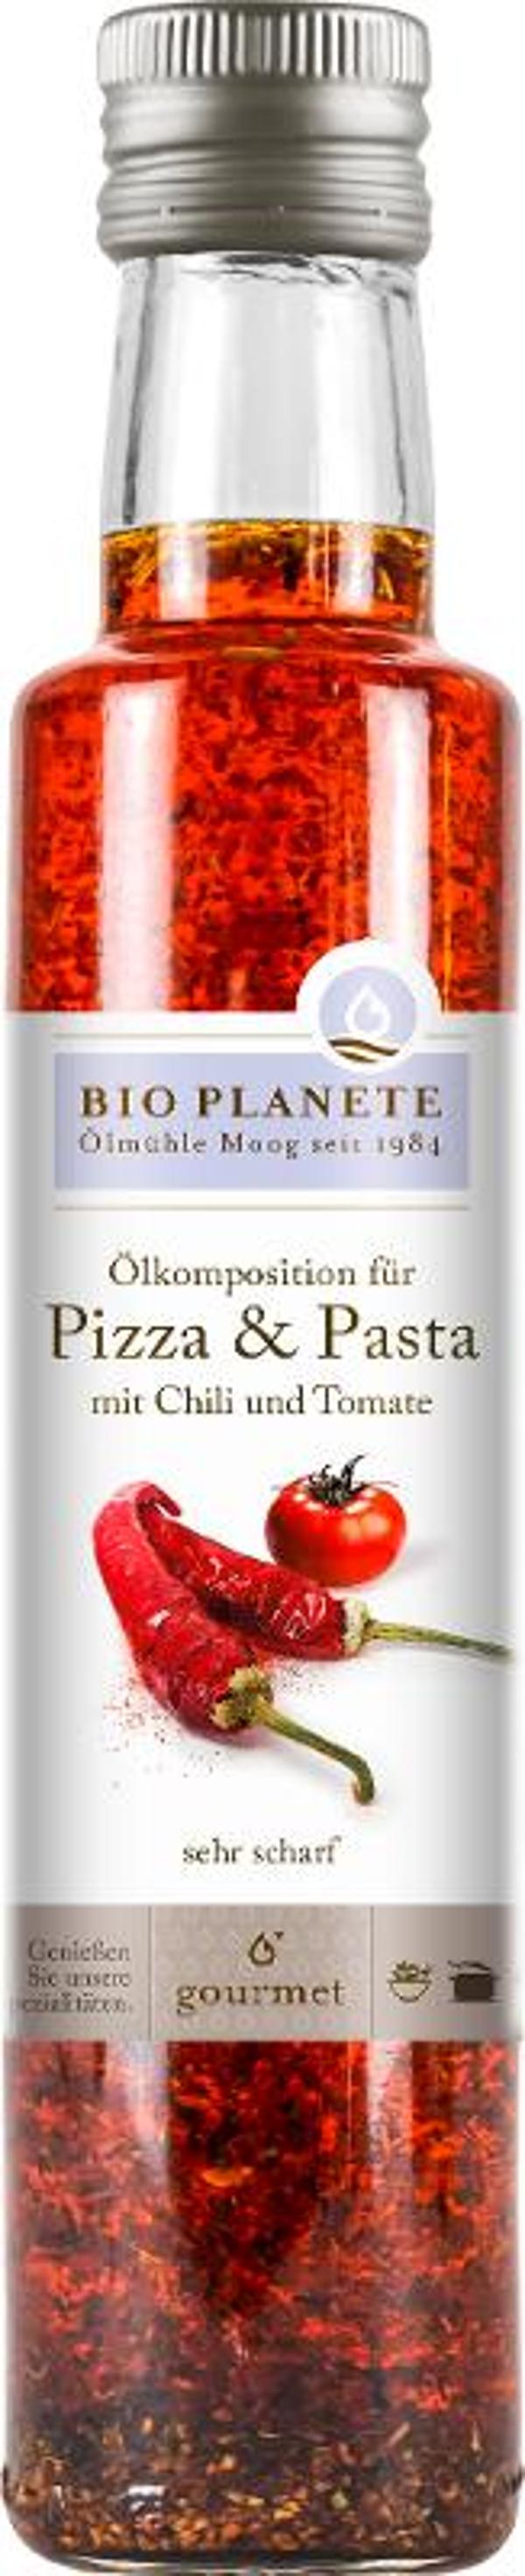 Produktfoto zu Ölkomposition für Pizza und Pasta 250 ml Bio Planete